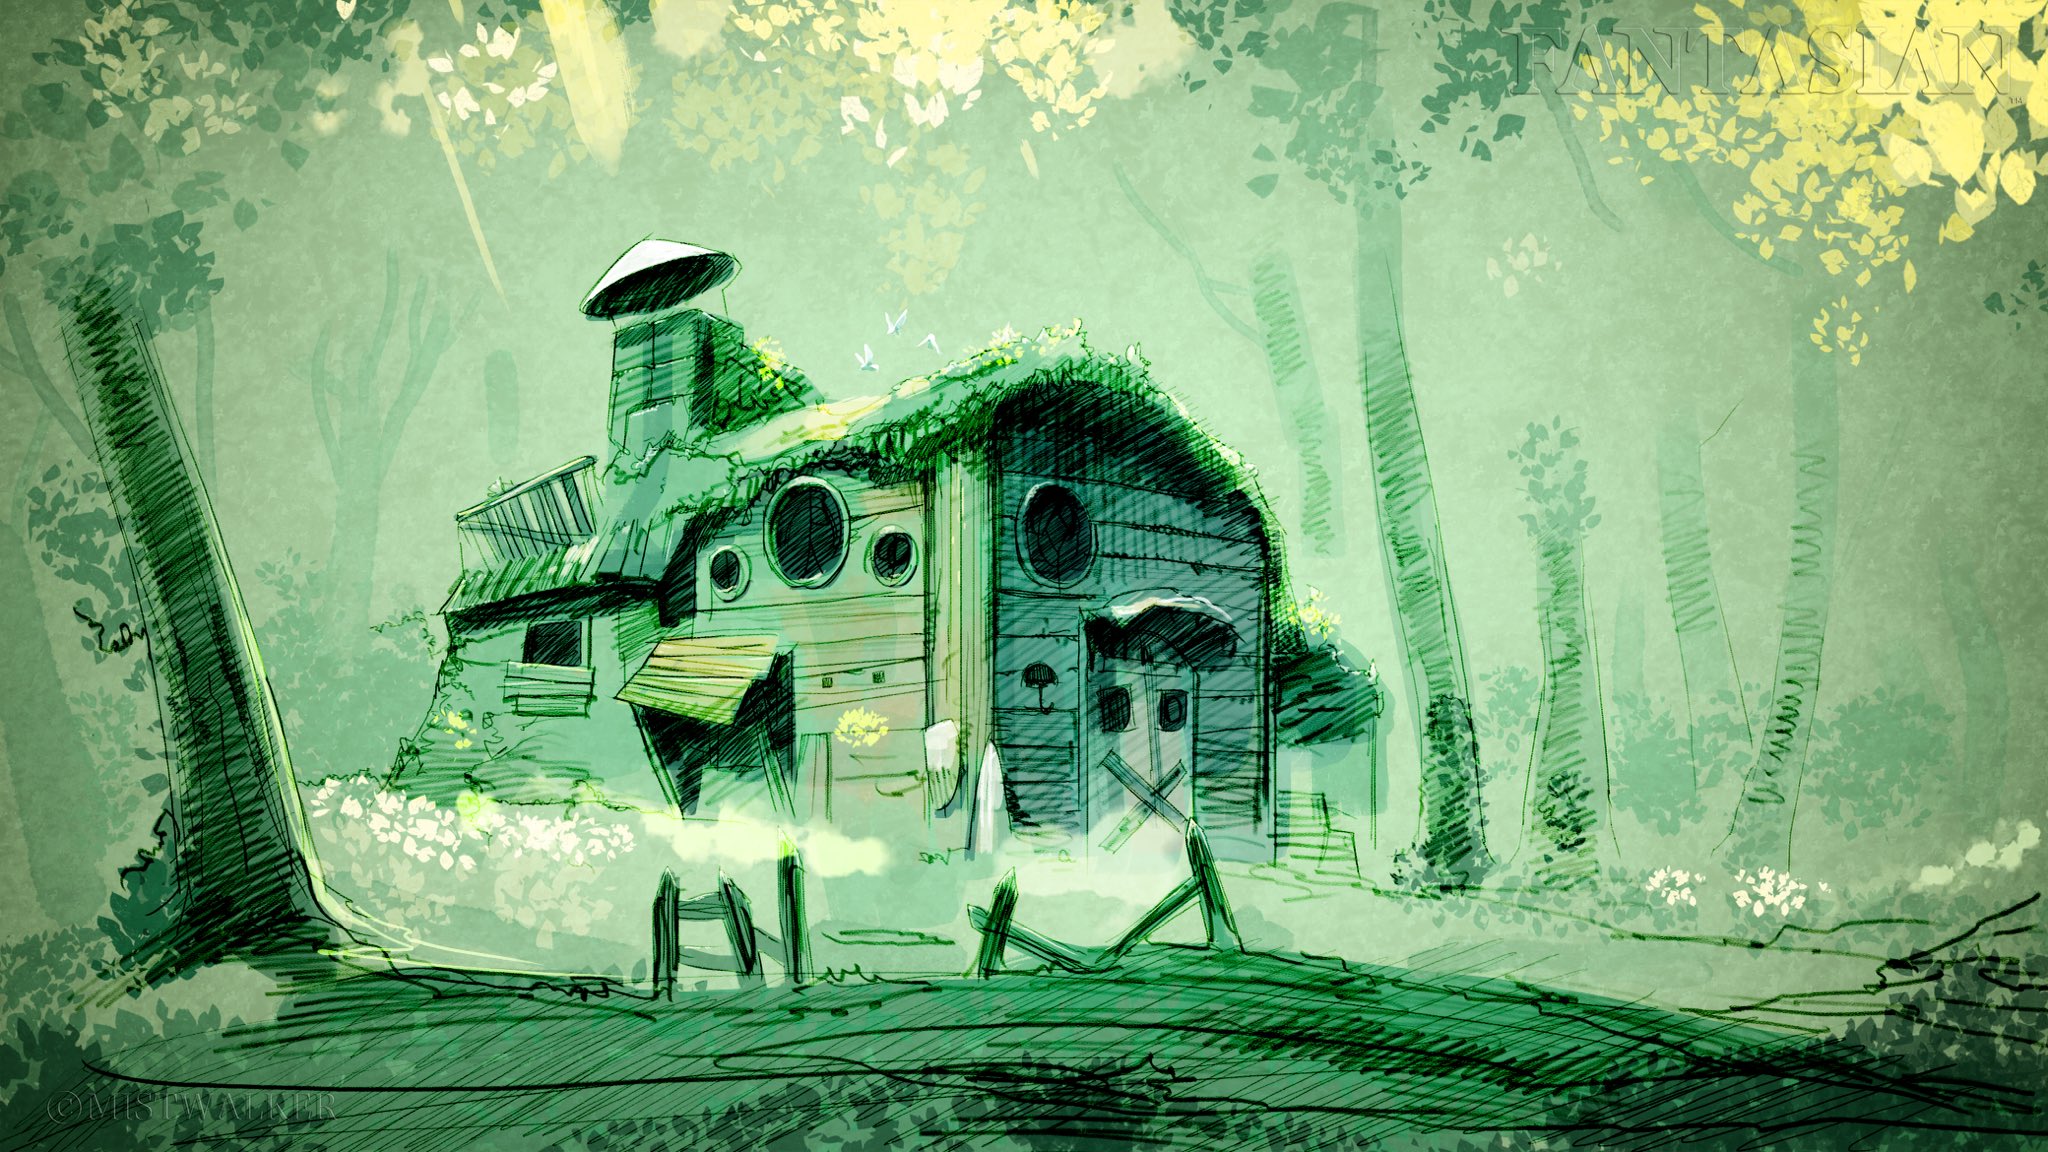 坂口博信公开新游《Fantasian》最新开发图 梦幻林中小屋